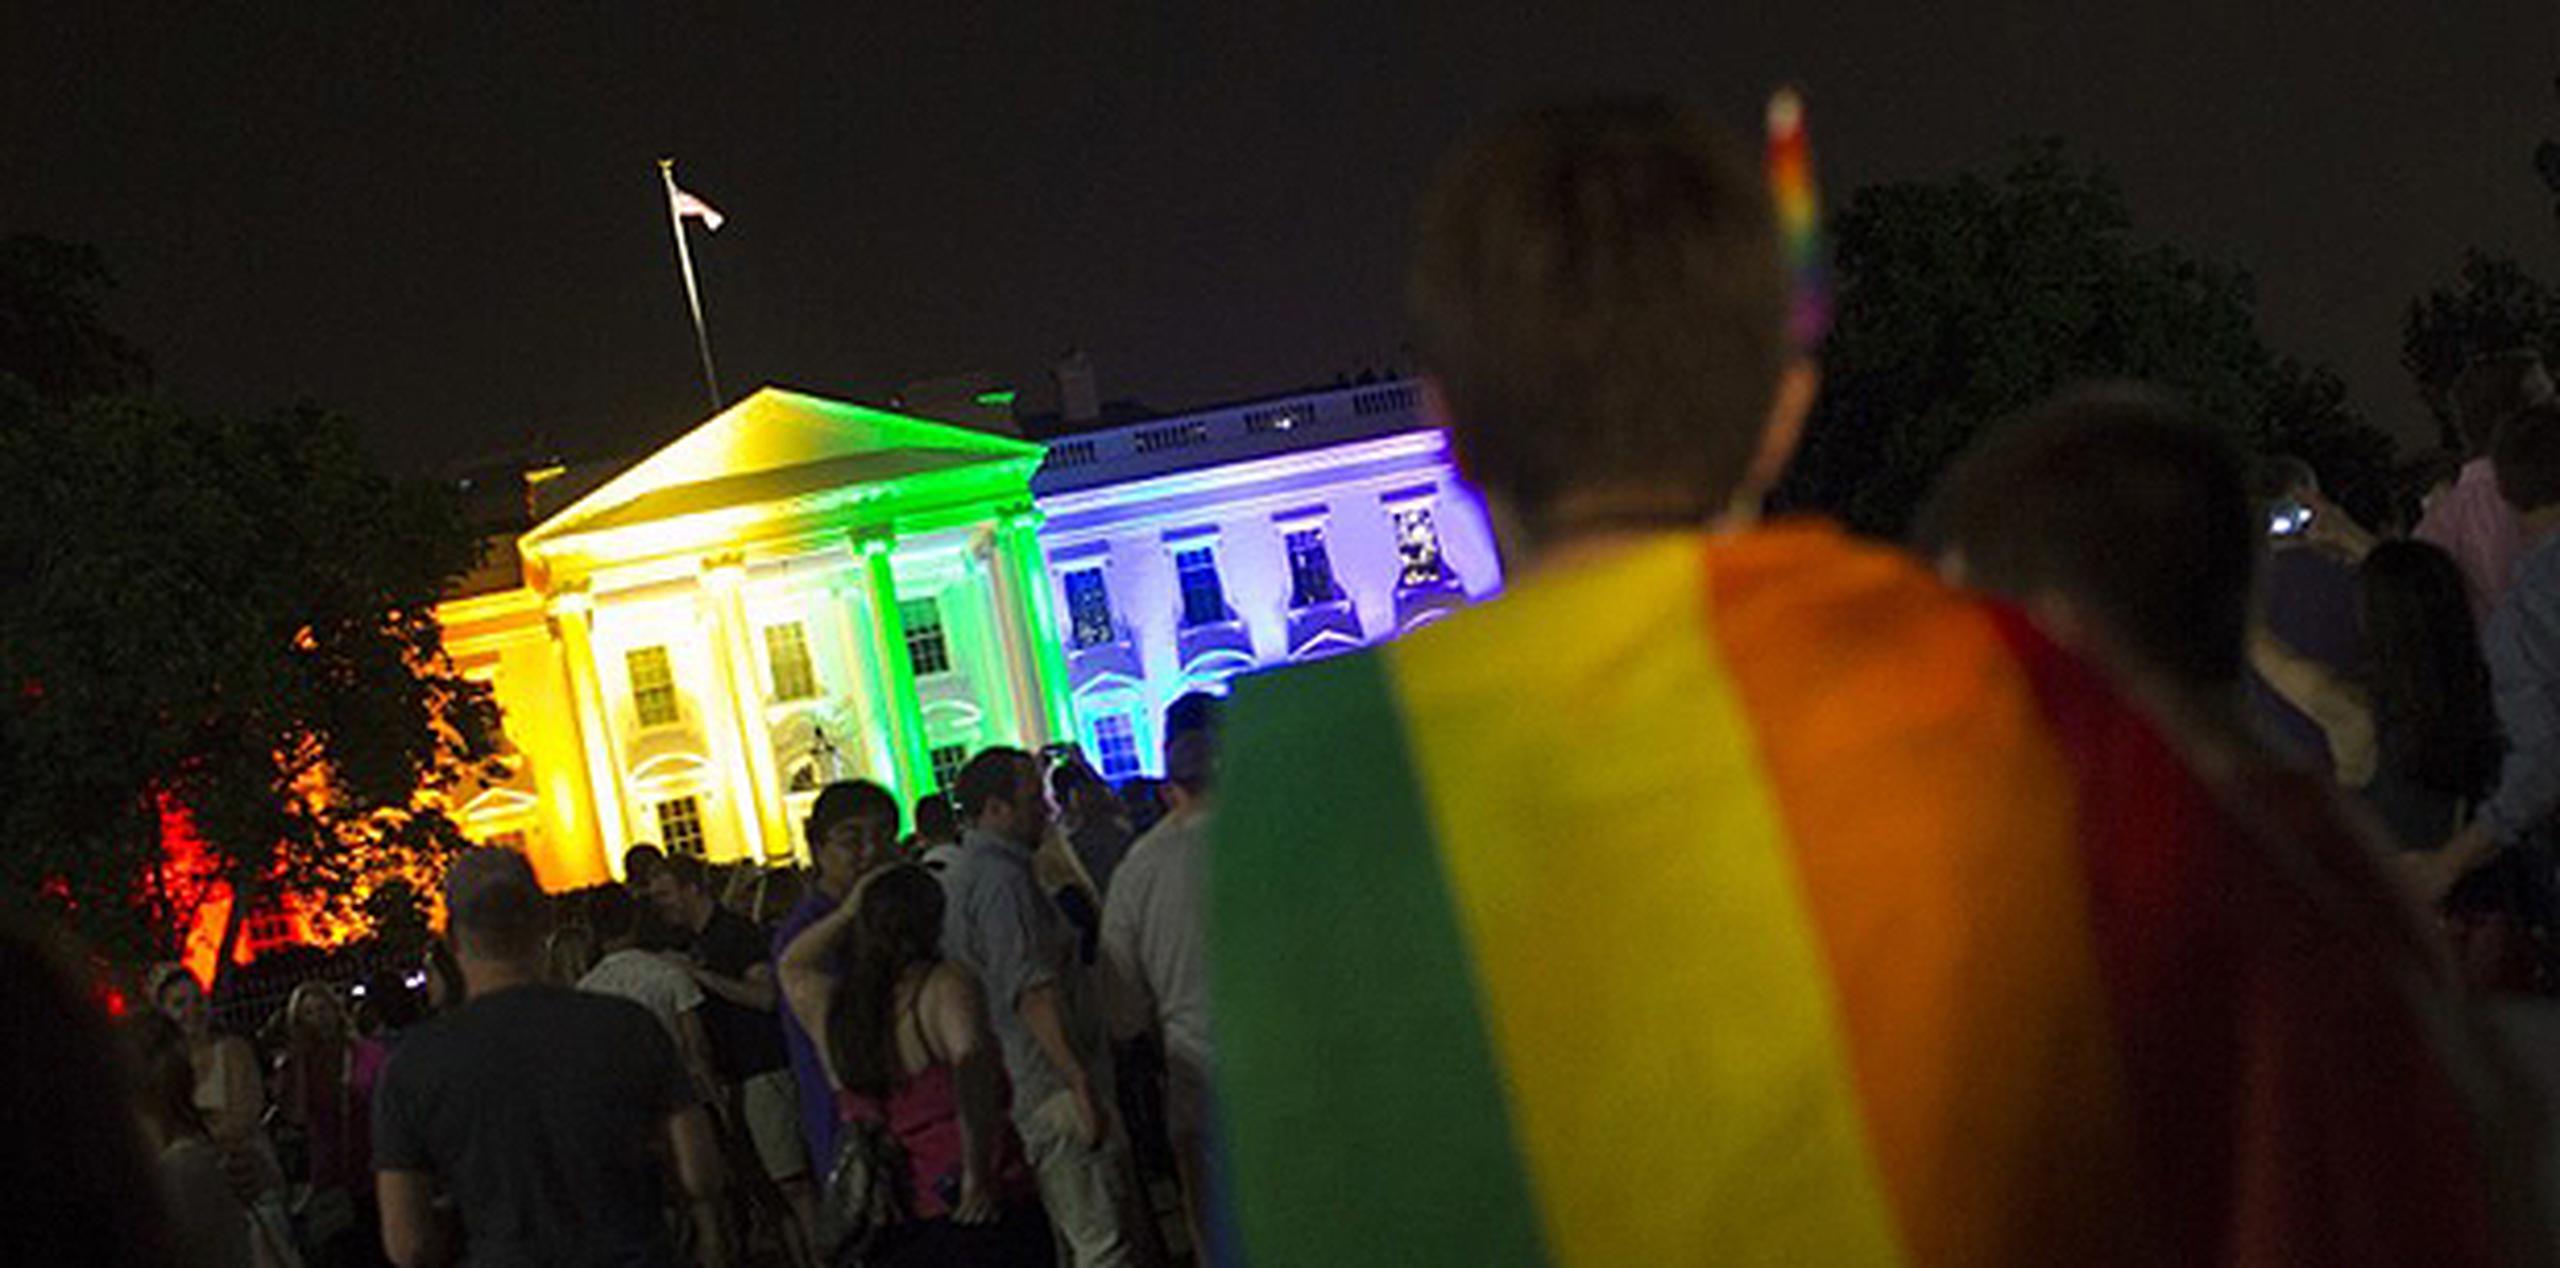 Los nuevos colores nocturnos iluminaban el lado norte de la Casa Blanca cuando Obama regresó la noche del viernes procedente de Charleston, Carolina del Sur. (AFP)